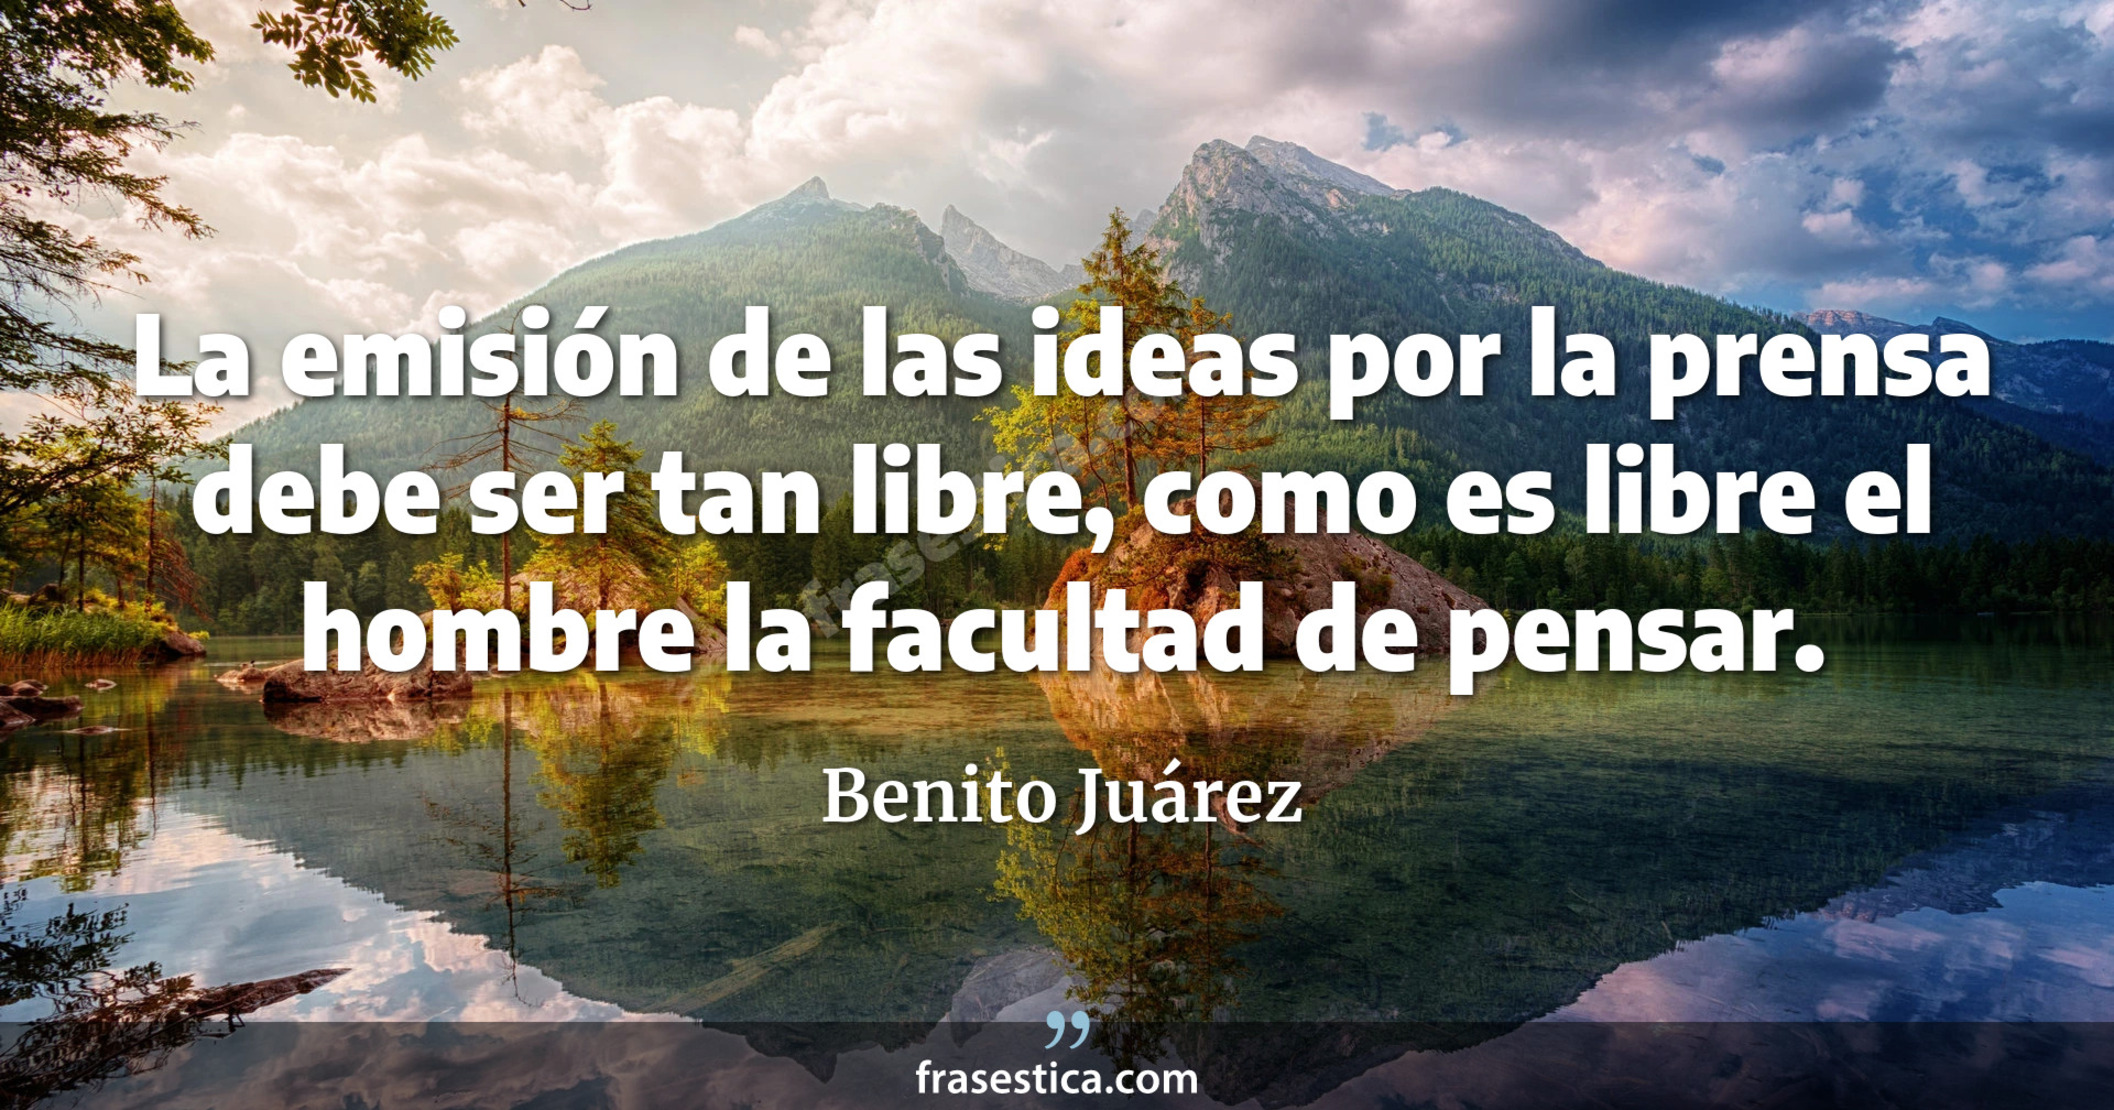 La emisión de las ideas por la prensa debe ser tan libre, como es libre el hombre la facultad de pensar. - Benito Juárez